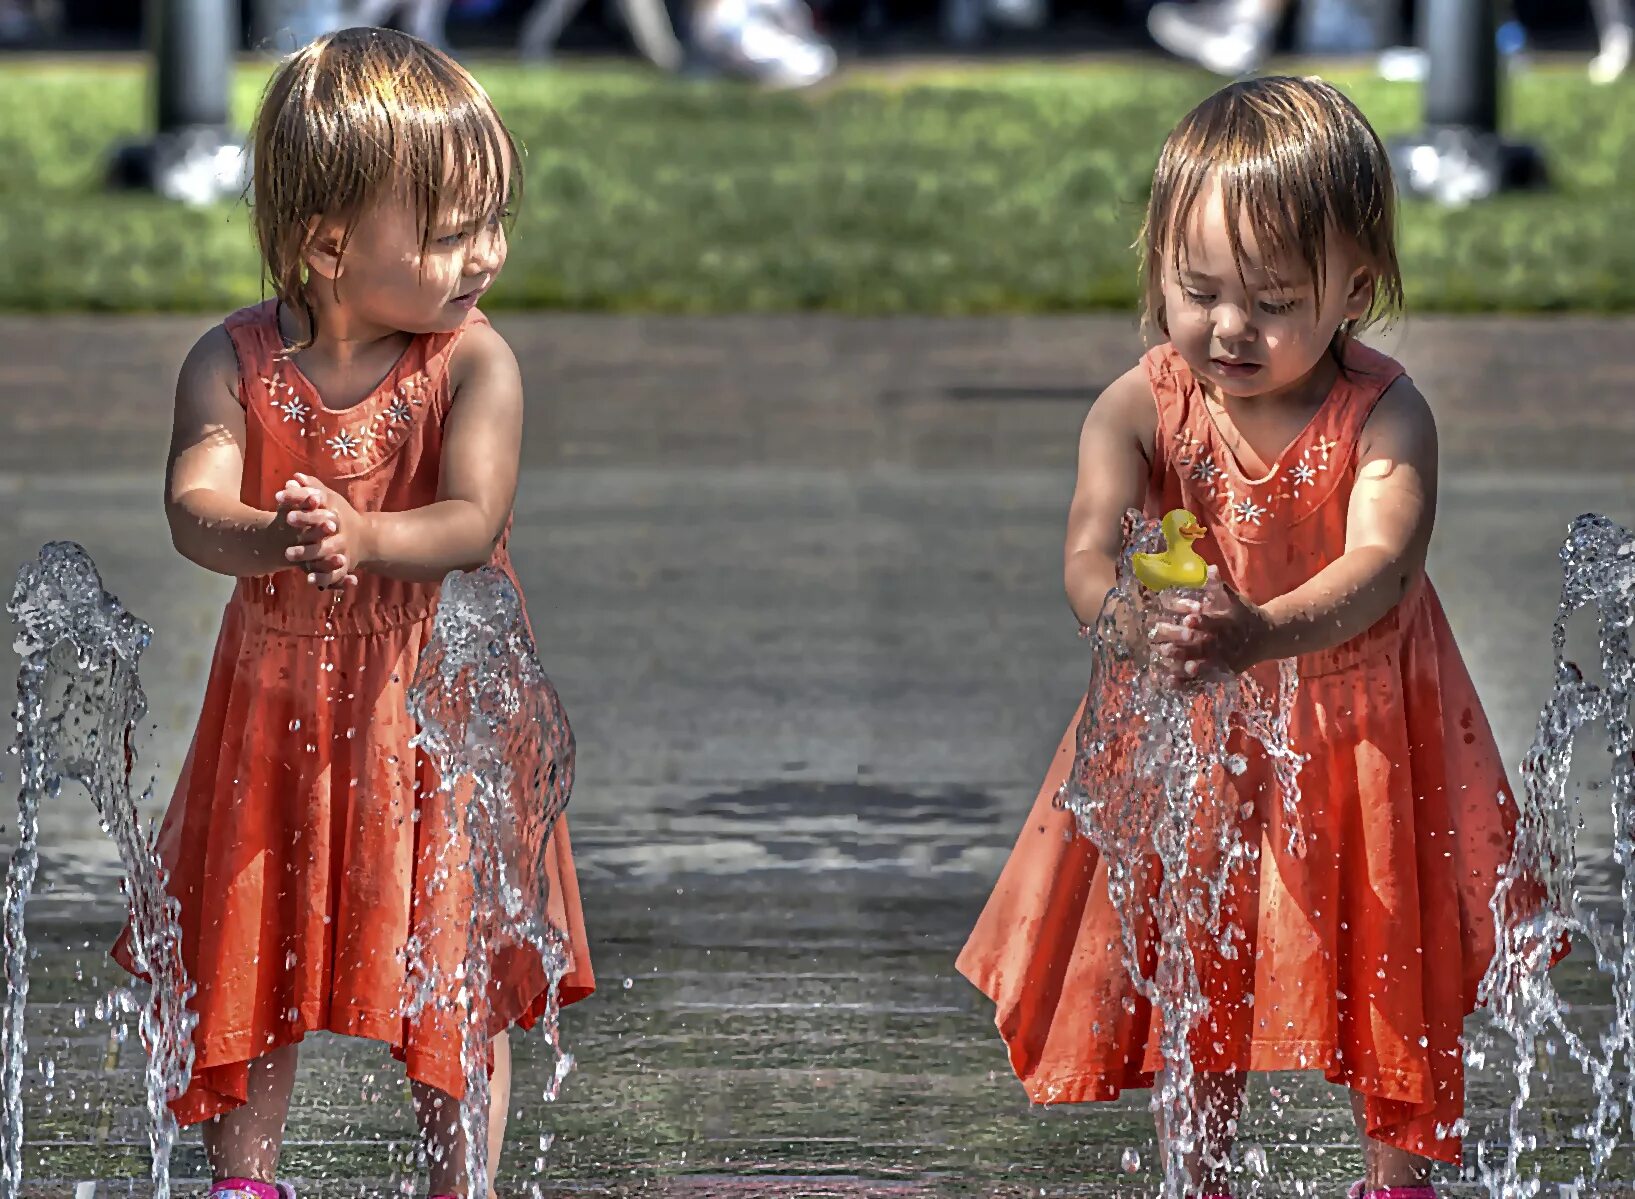 Мокрые сестренки. Мокрое платье для детей. Дети играют в мокрой одежде. Мокрое платье картинка для детей. Фликр девочка фонтан.